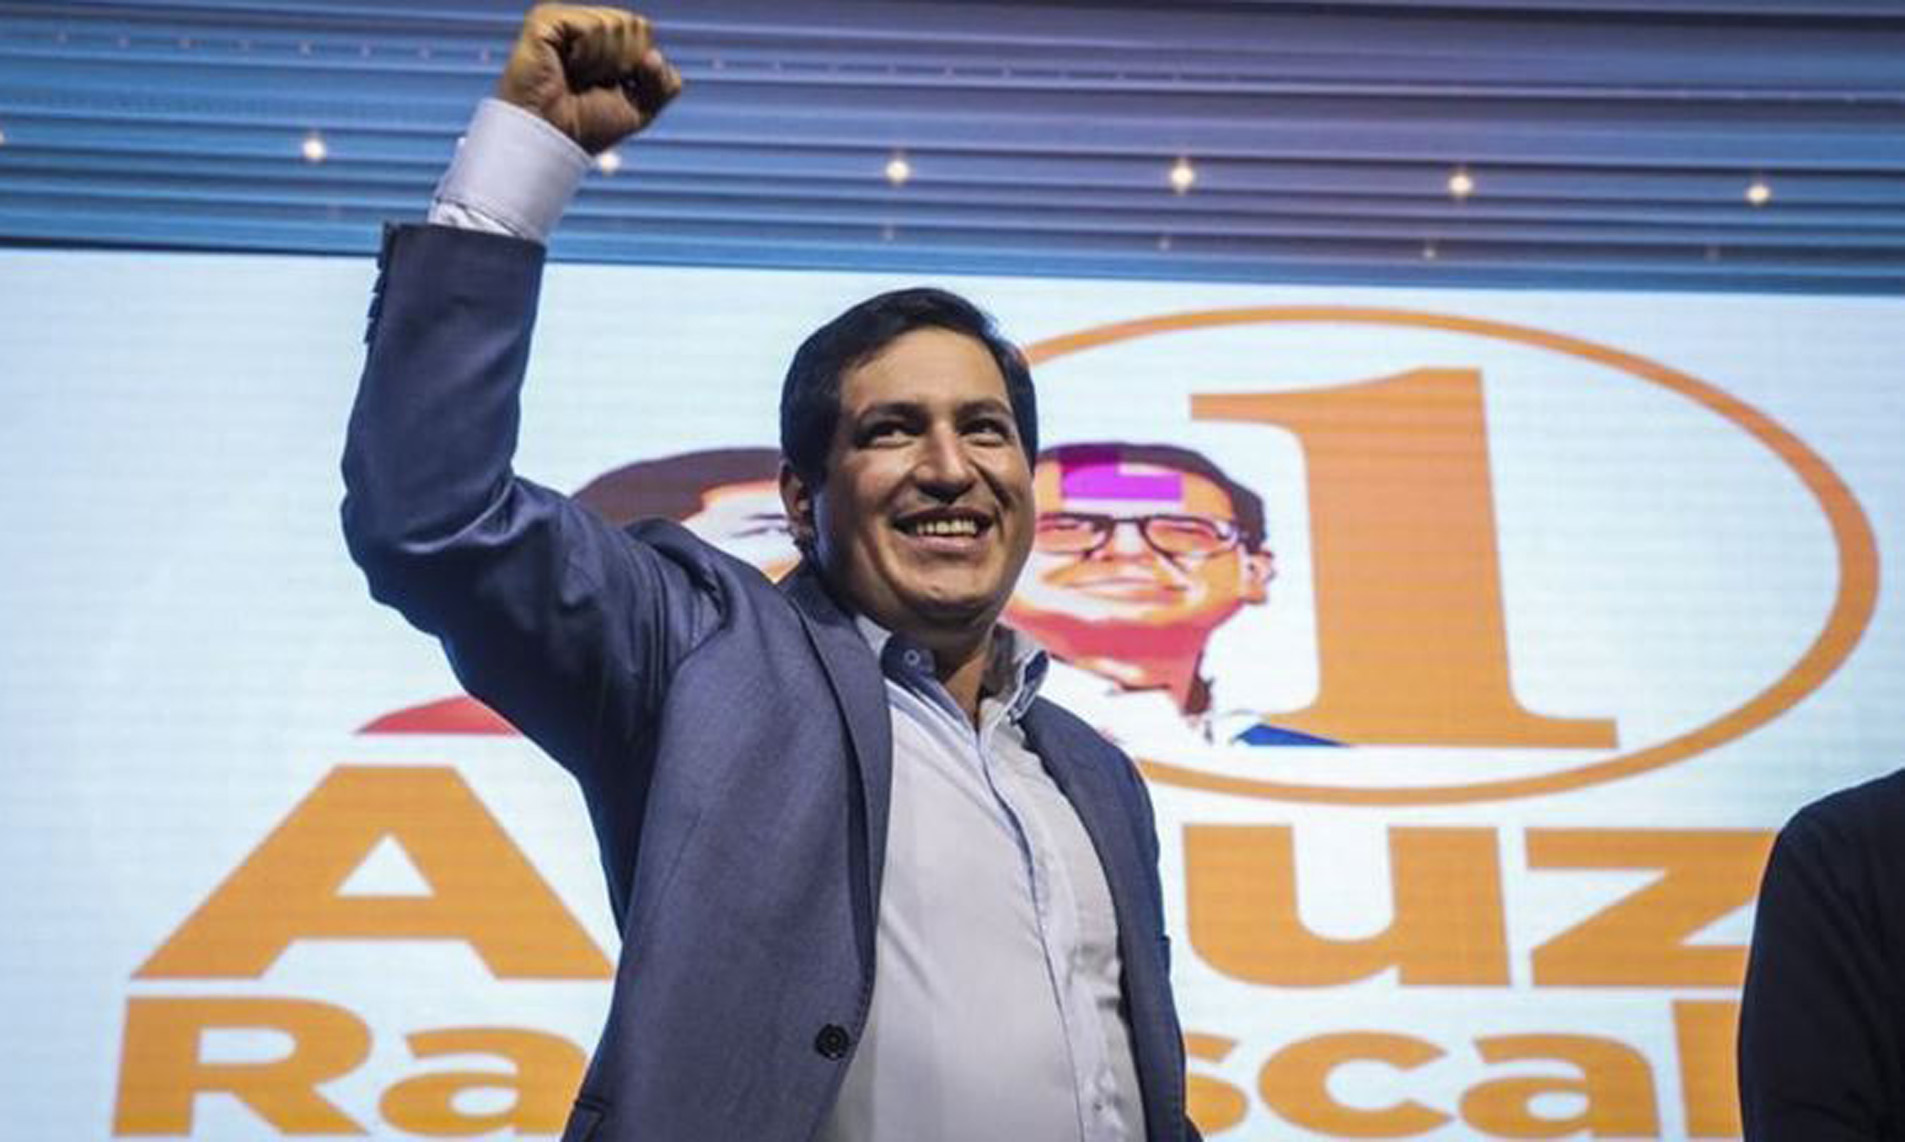 Anunciaron los resultados finales de elección en Ecuador 